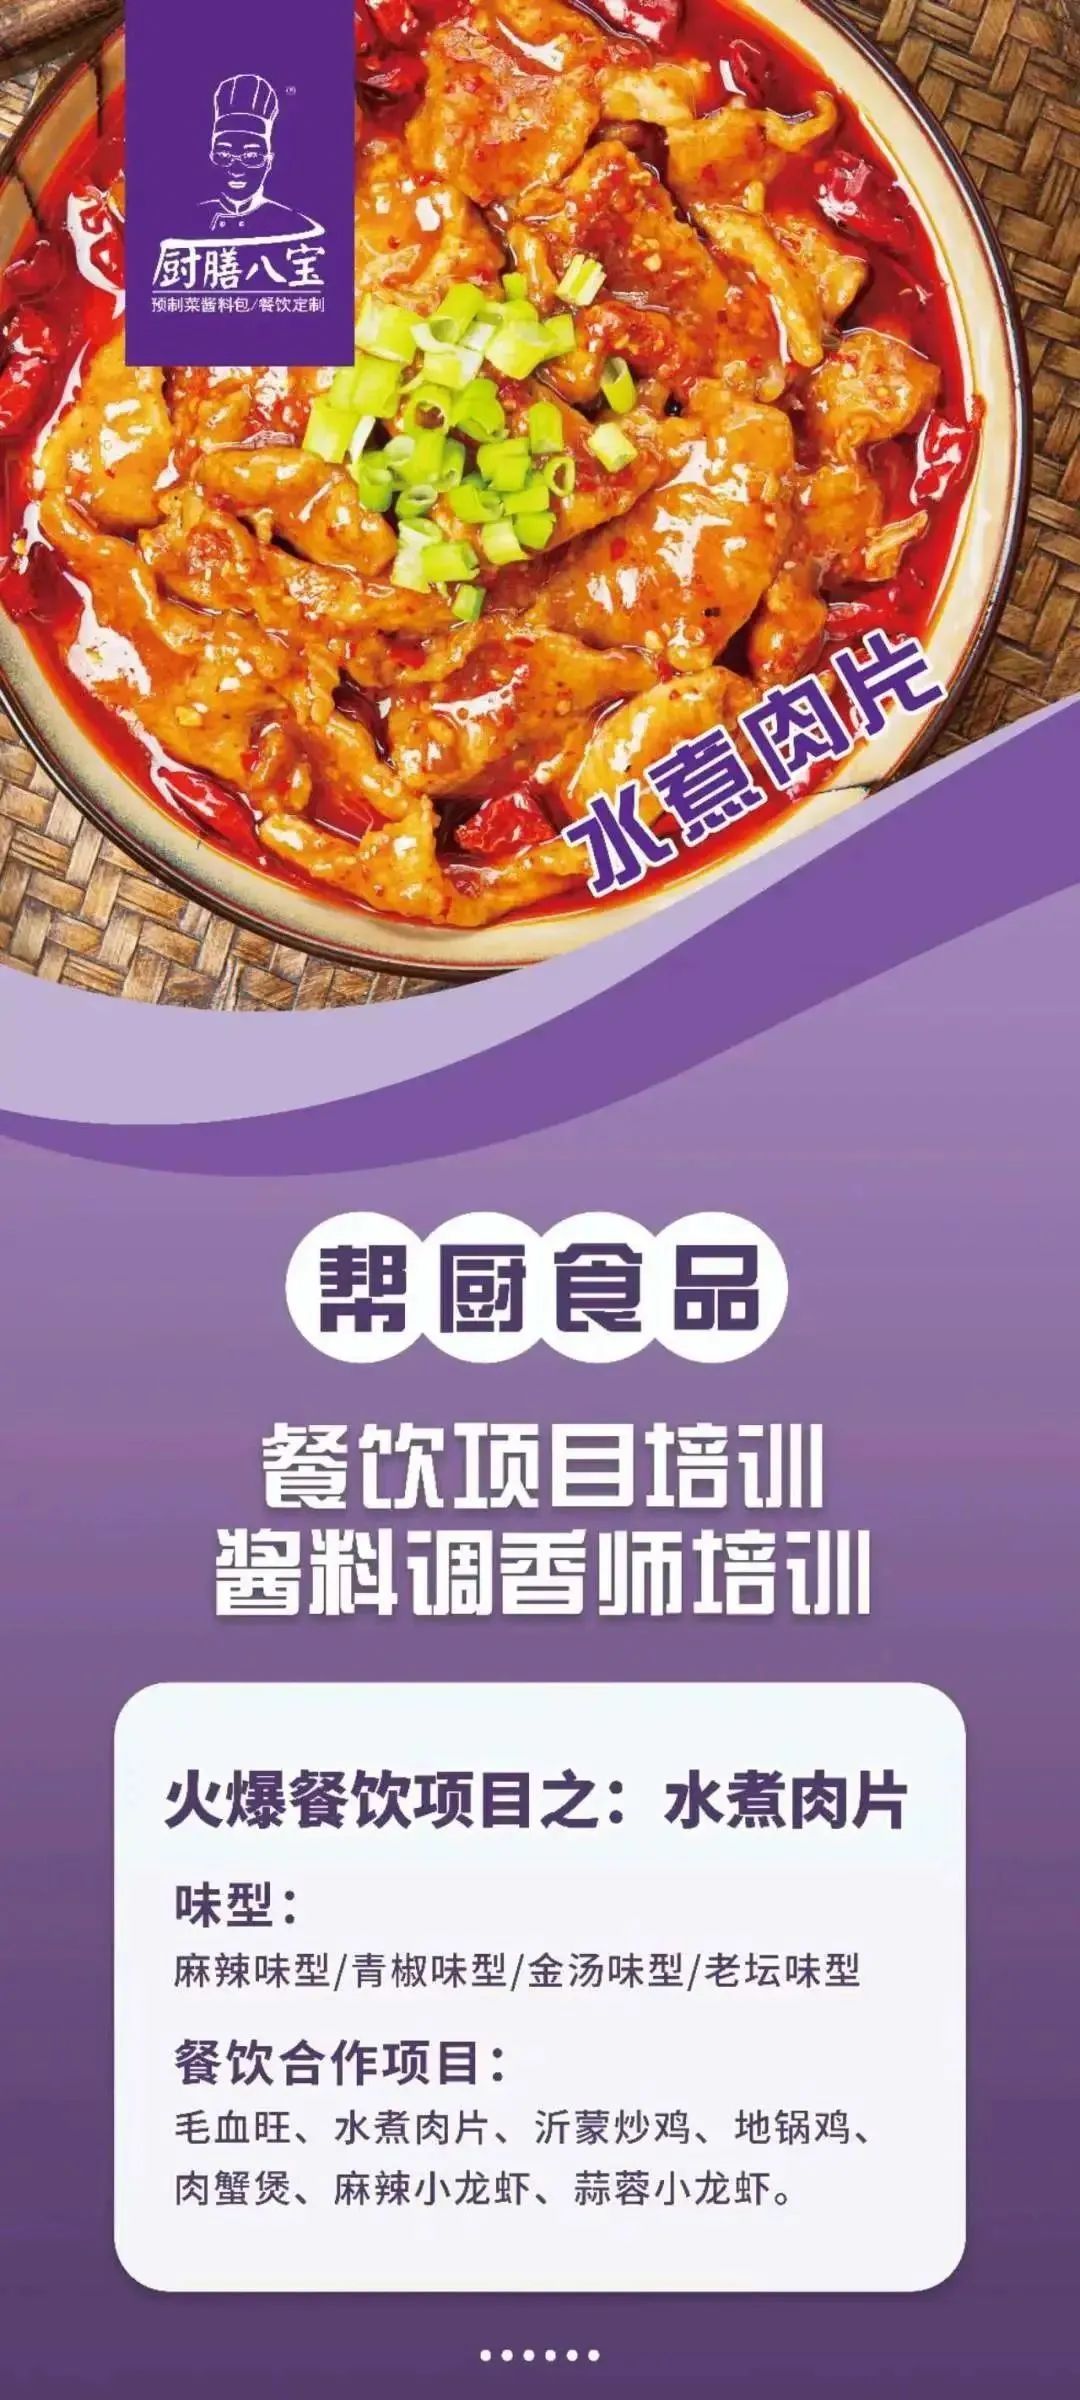 展商推介丨青岛帮厨食品有限公司将携新产品亮相2023北京餐博会(图6)